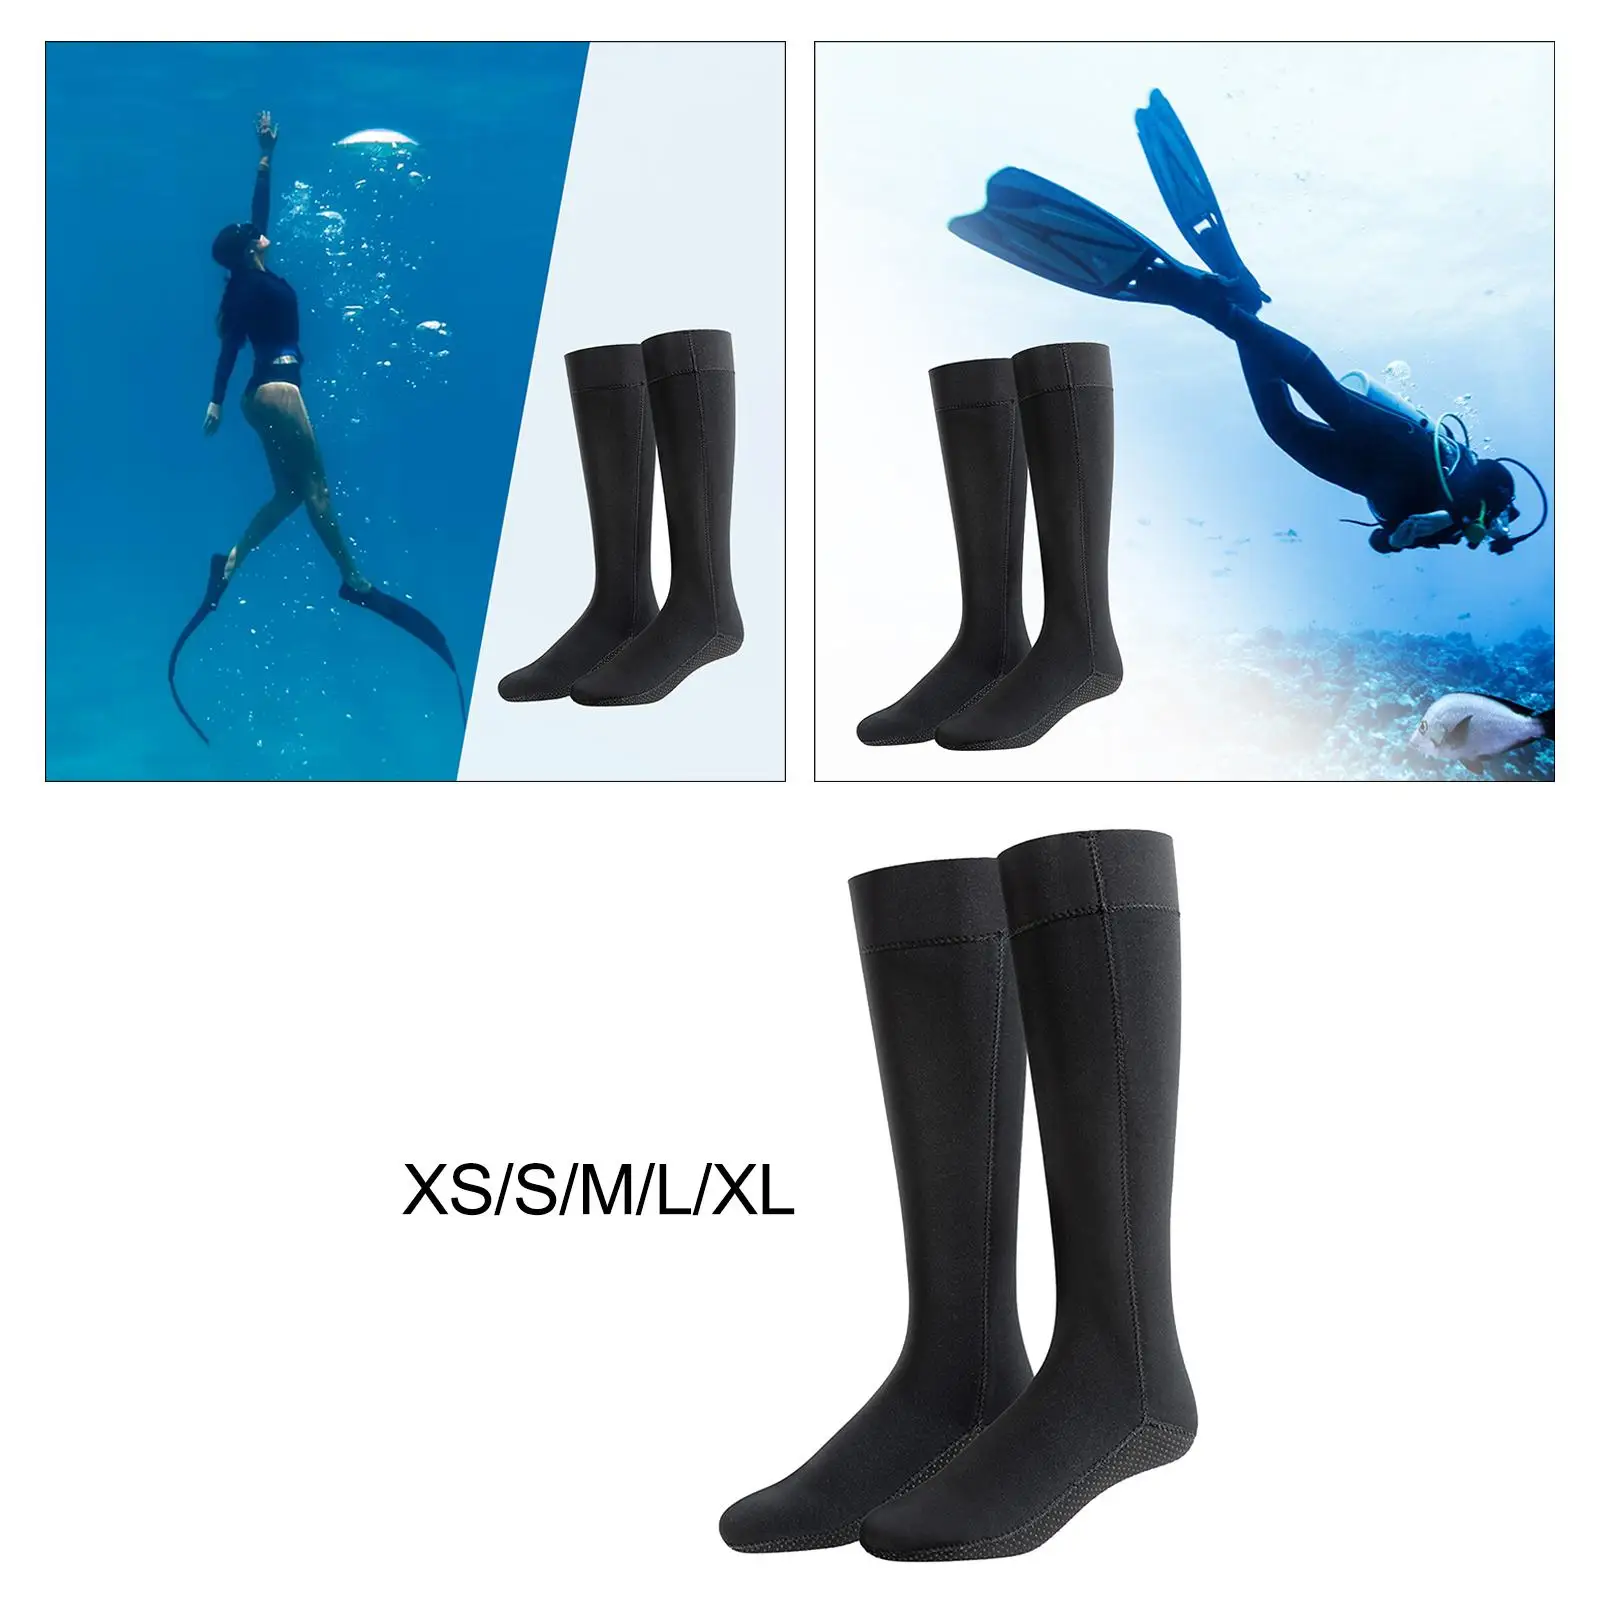 Diving Socks Anti Slip Thermal Water Resistant Water Socks Wetsuit Booties for Snorkeling Kayaking Surfing Swim Unisex Adult